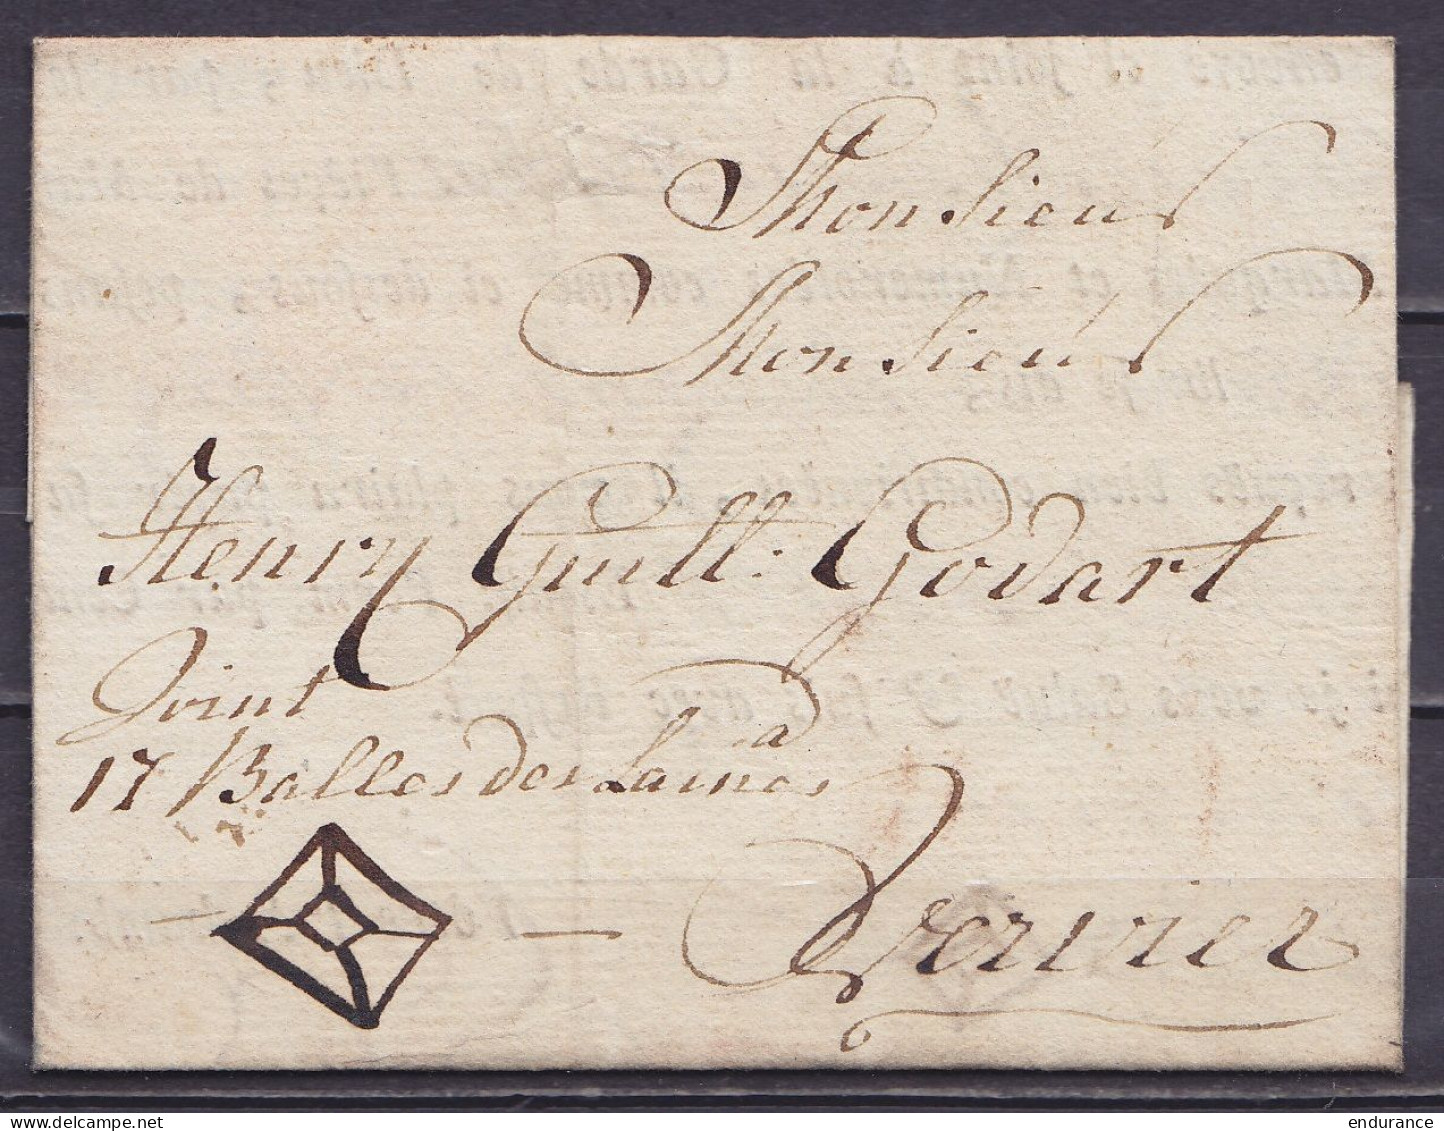 L. (accompagnant Des Colis) Datée 23 Novembre 1786 De BOIS-LE-DUC Pour VERVIERS - Man. "joint 17 Balles De Laines" - 1714-1794 (Paises Bajos Austriacos)